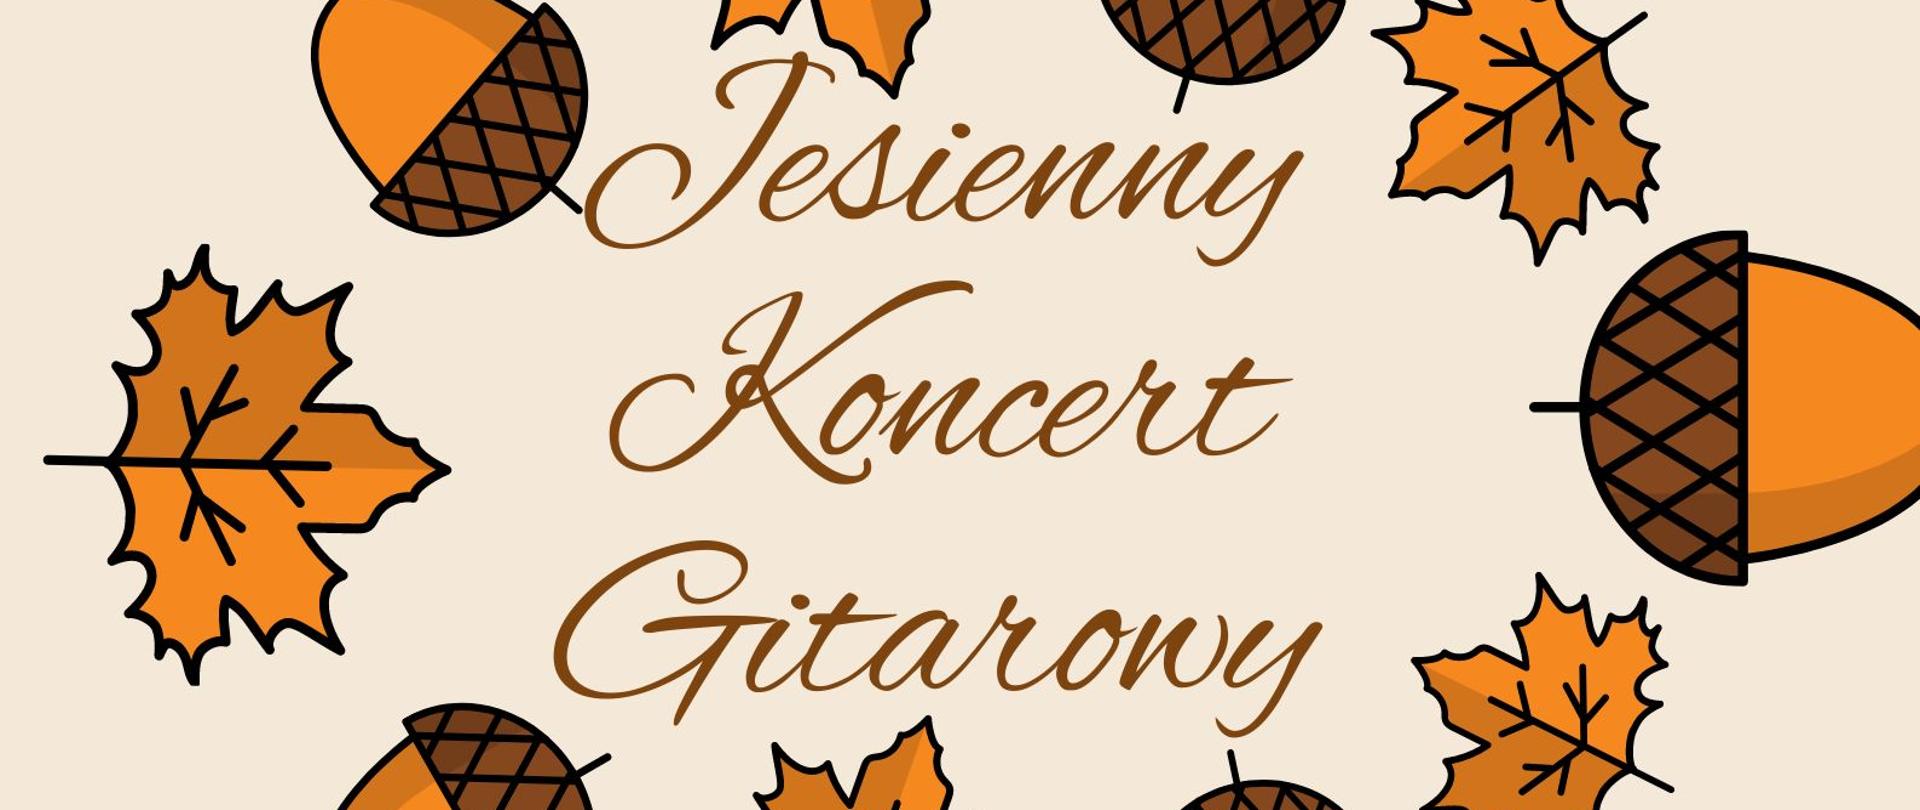 Plakat koncertu jesiennego klasy gitary z dnia 24 października 2023 r.
Tło plakatu jest w kolorze beżowym. Po środku jest napis: jesienny koncert gitarowy w kolorze brązowym. Dookoła napisu znajdują się naprzemiennie znaki graficzne rudych liści i żołędzi. 